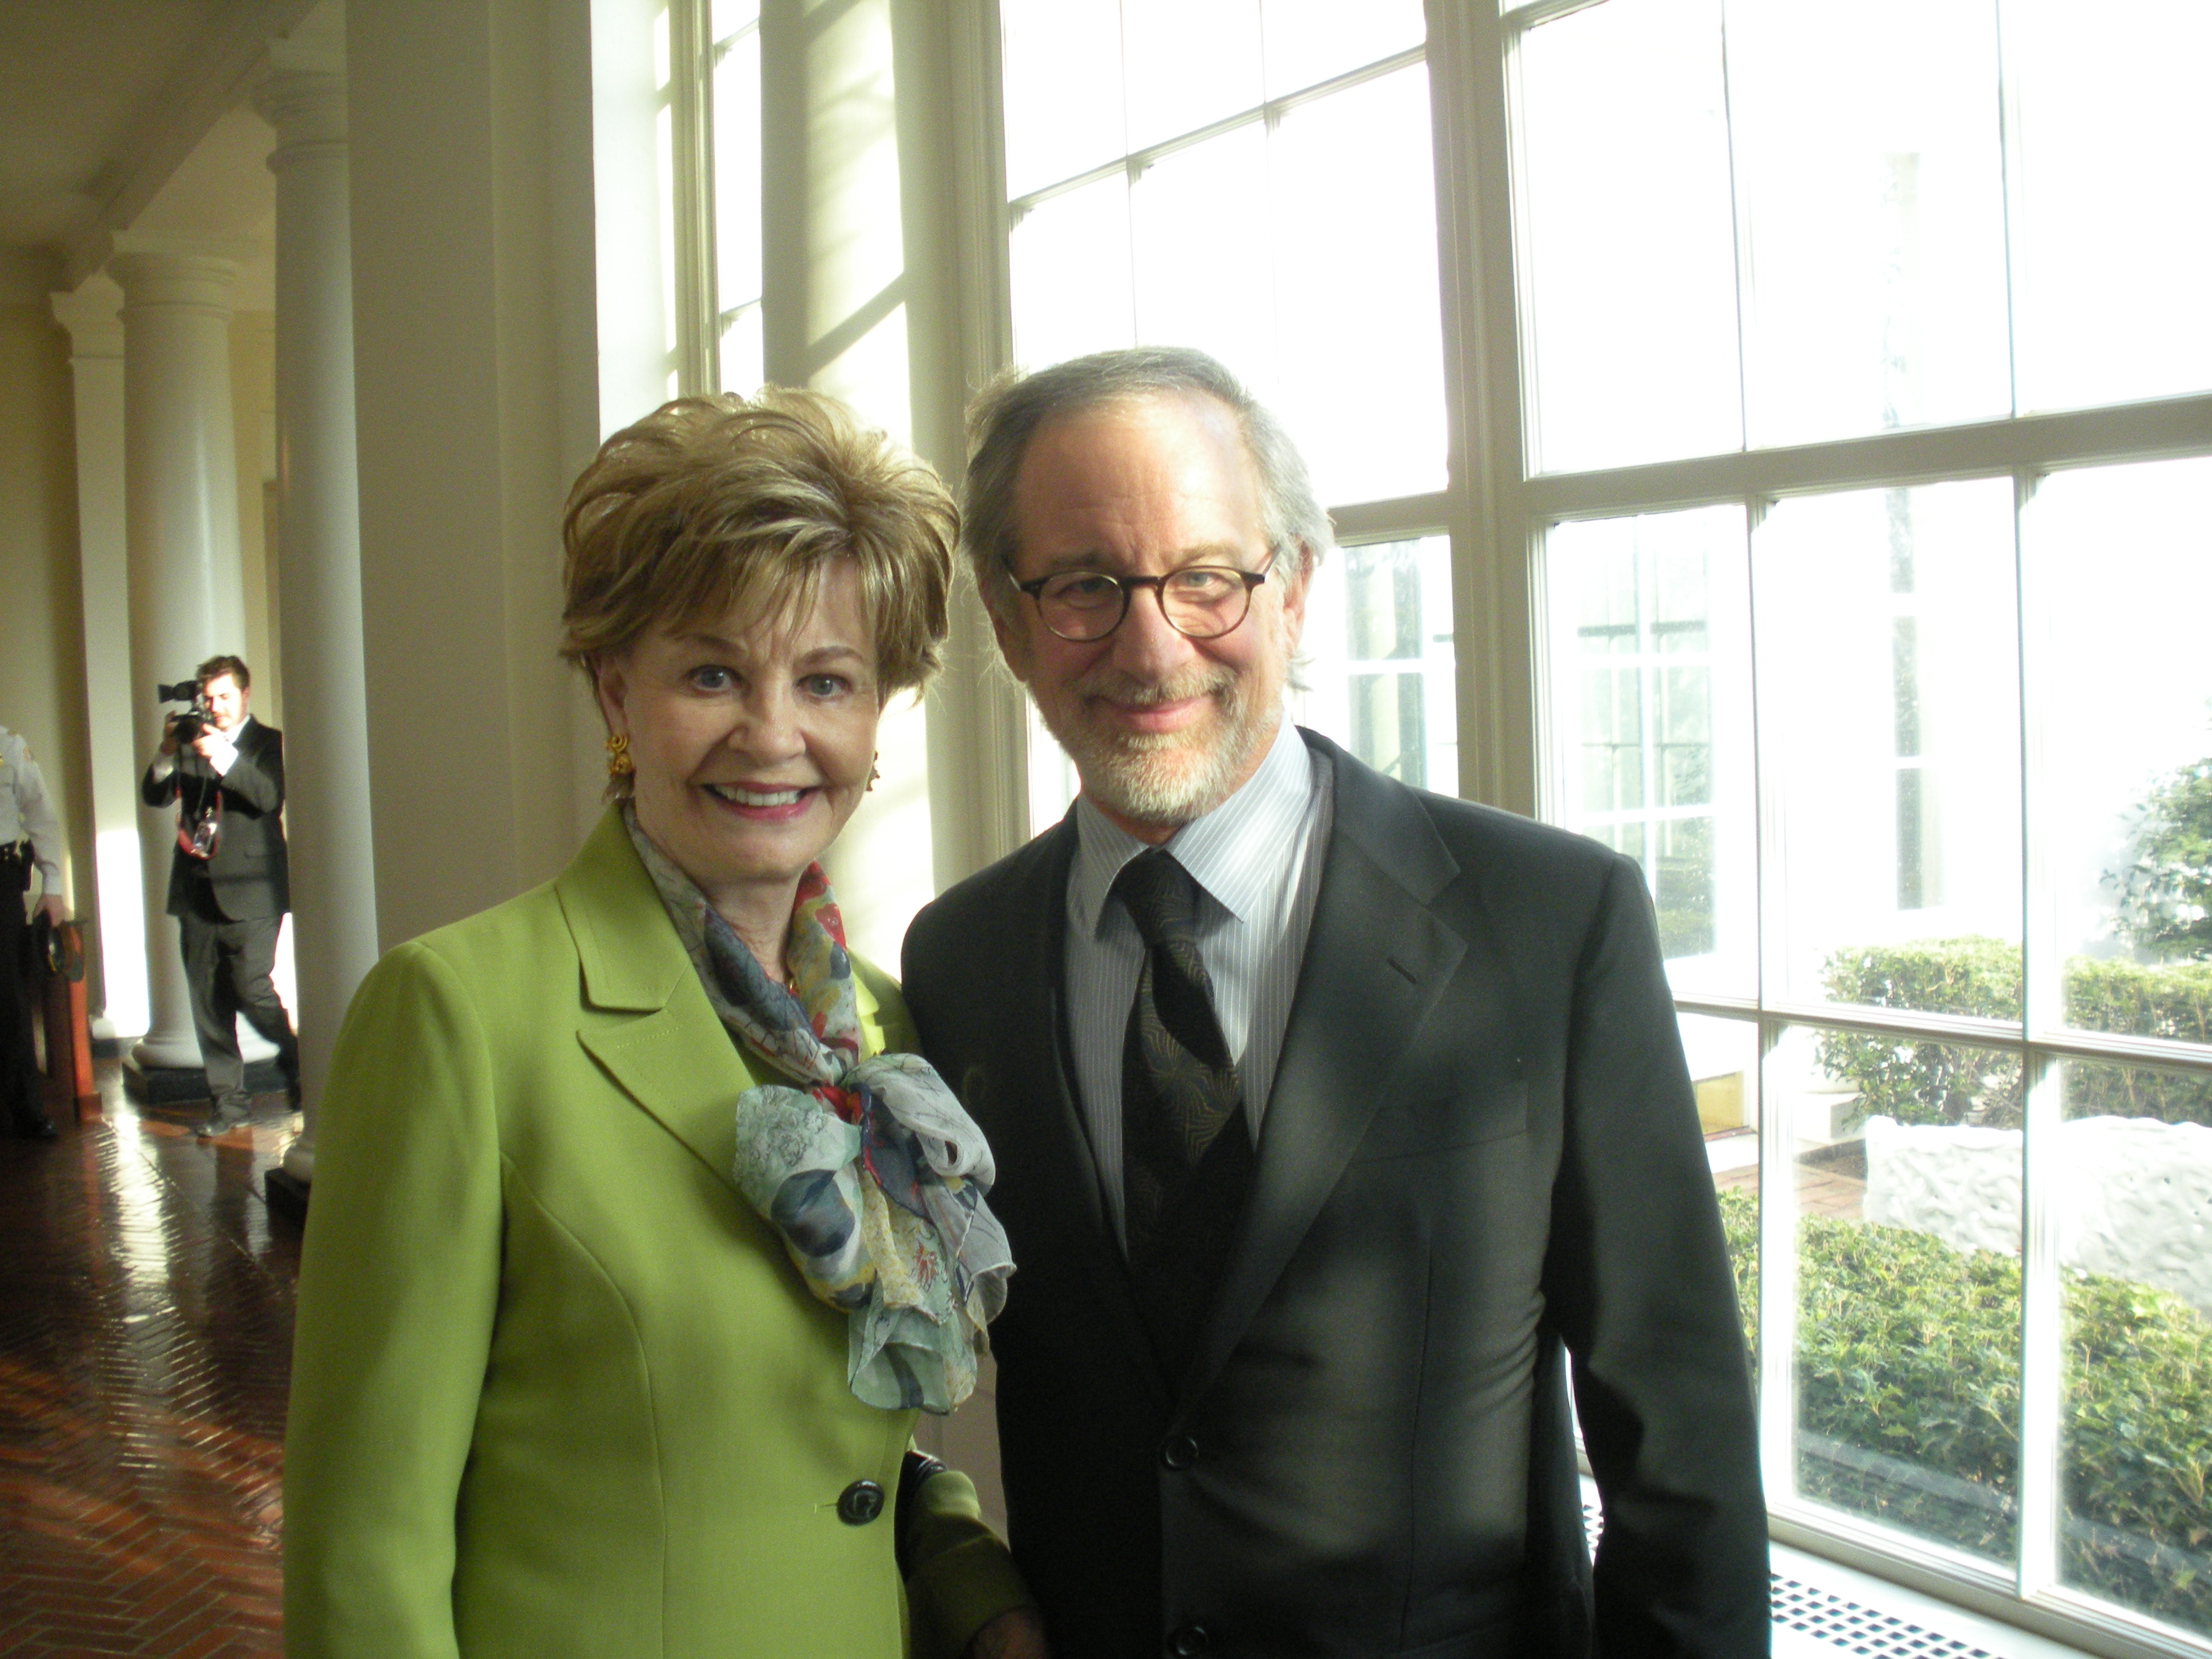 Congresswoman Bordallo and Steven Spielberg